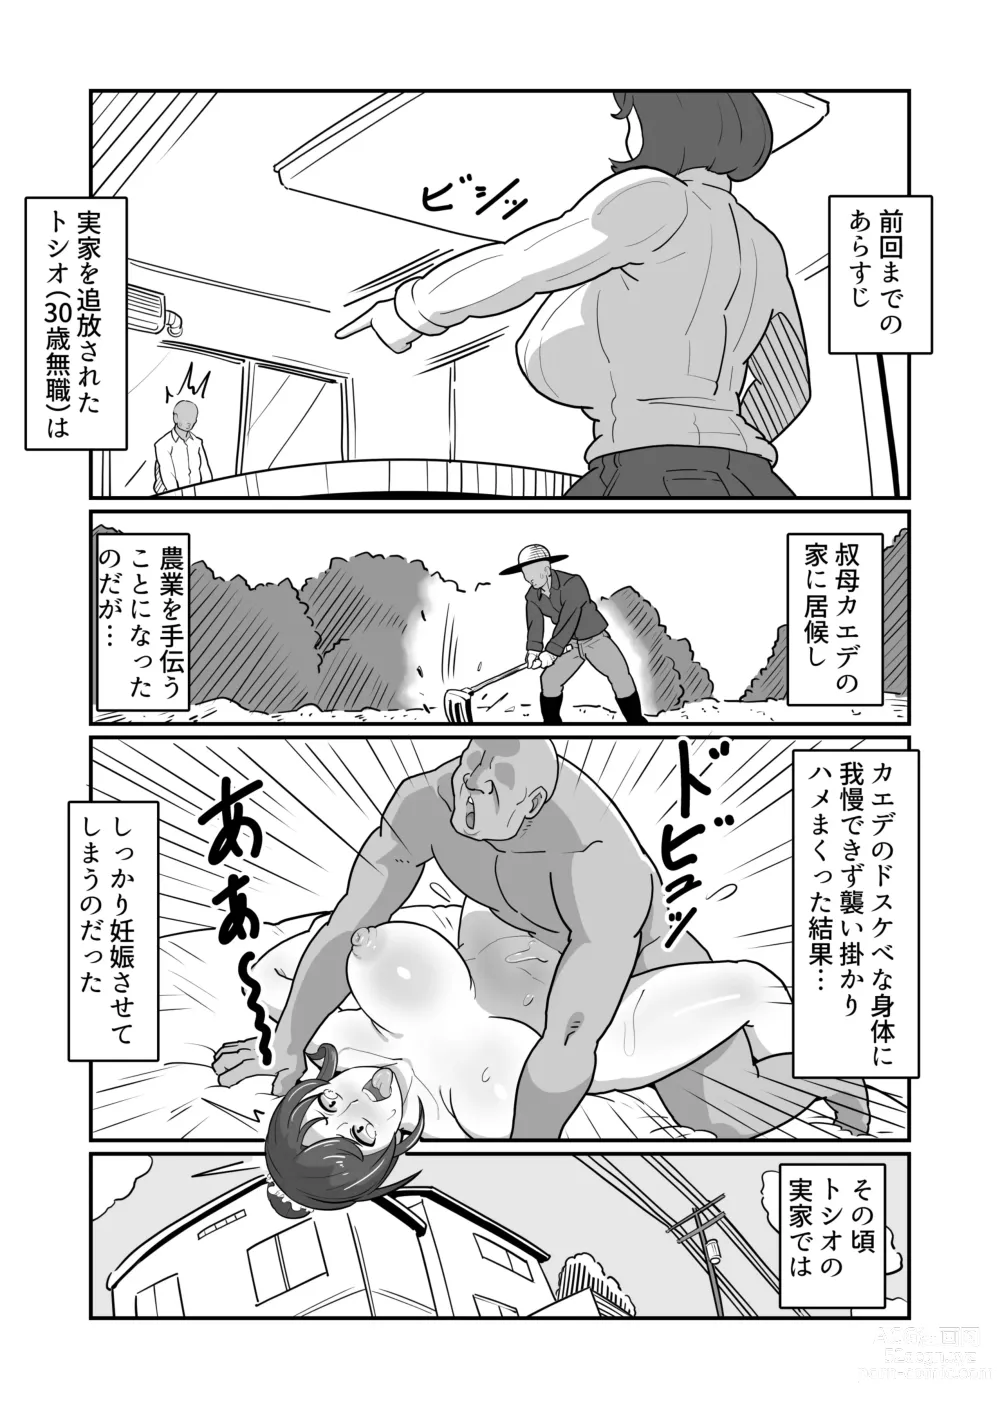 Page 3 of doujinshi Bote Haha ~Ore o Jikka kara Oidashita Mukatsuku Hahaoya o Muriyari Haramasete Botehara Sex Zanmai!~